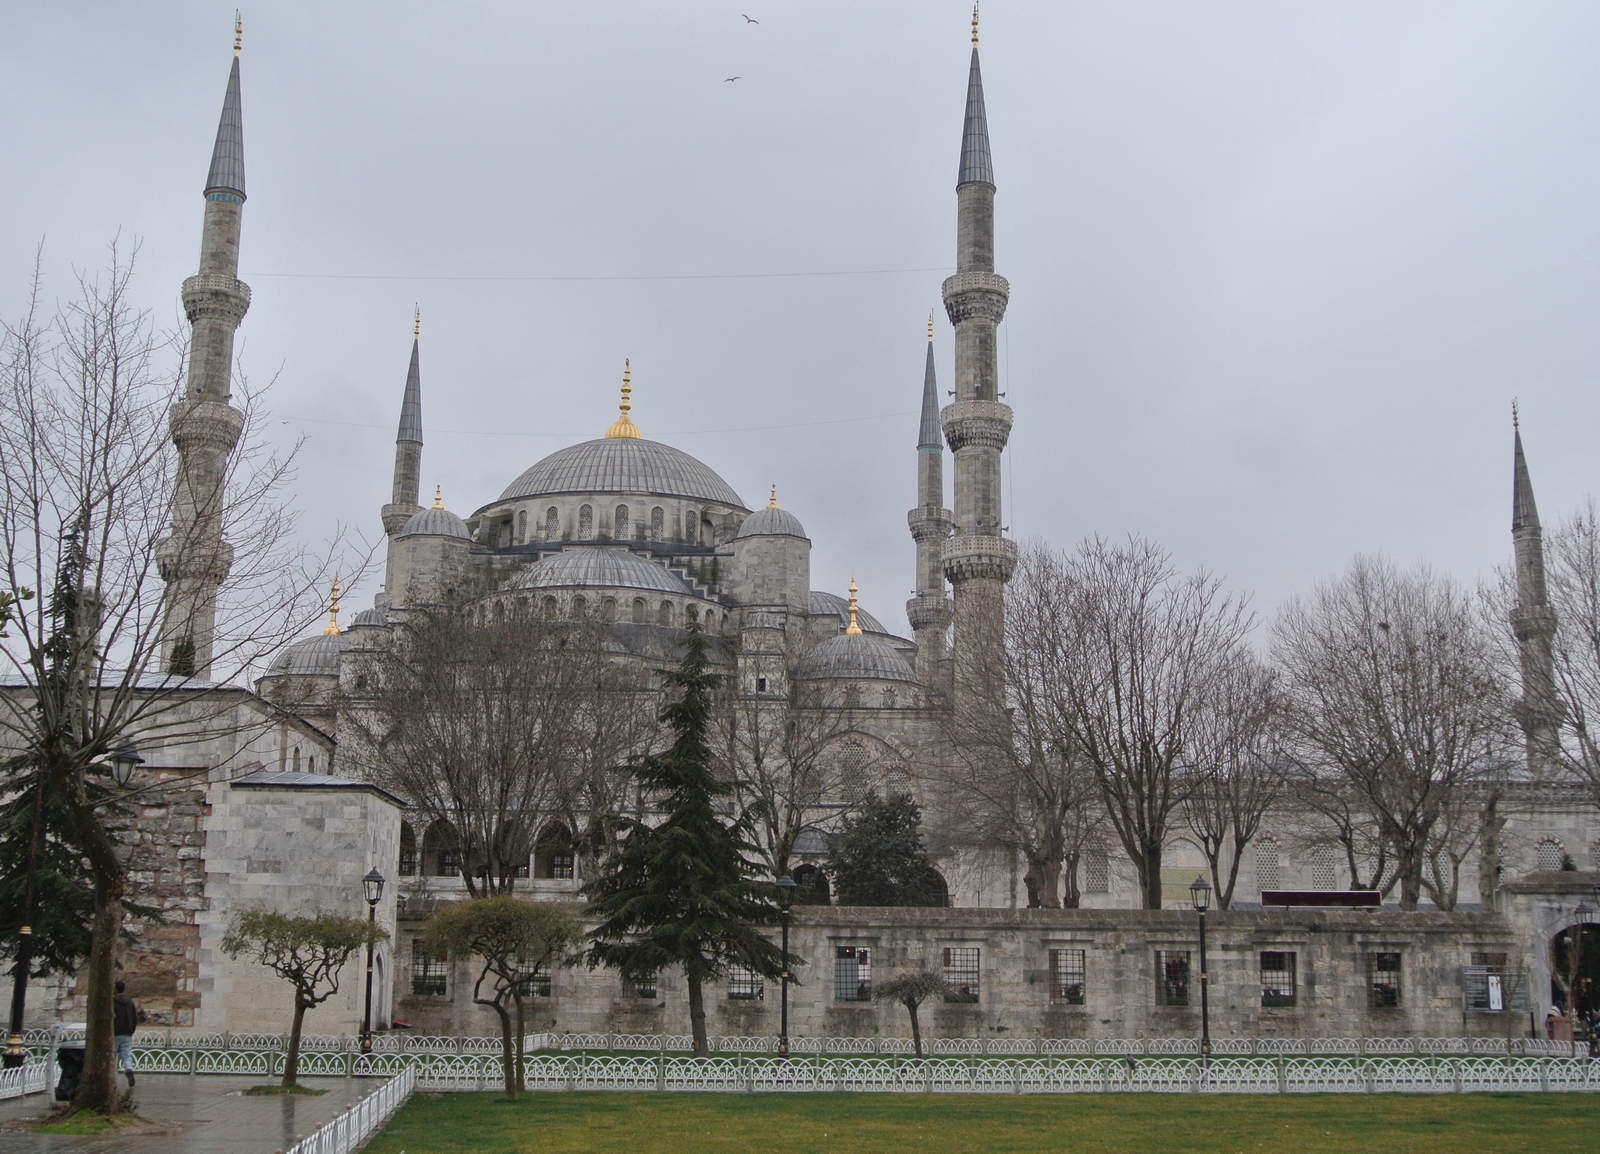 Abrumadora Cantidad de IGLESIAS EN EUROPA se convierten en Mezquitas